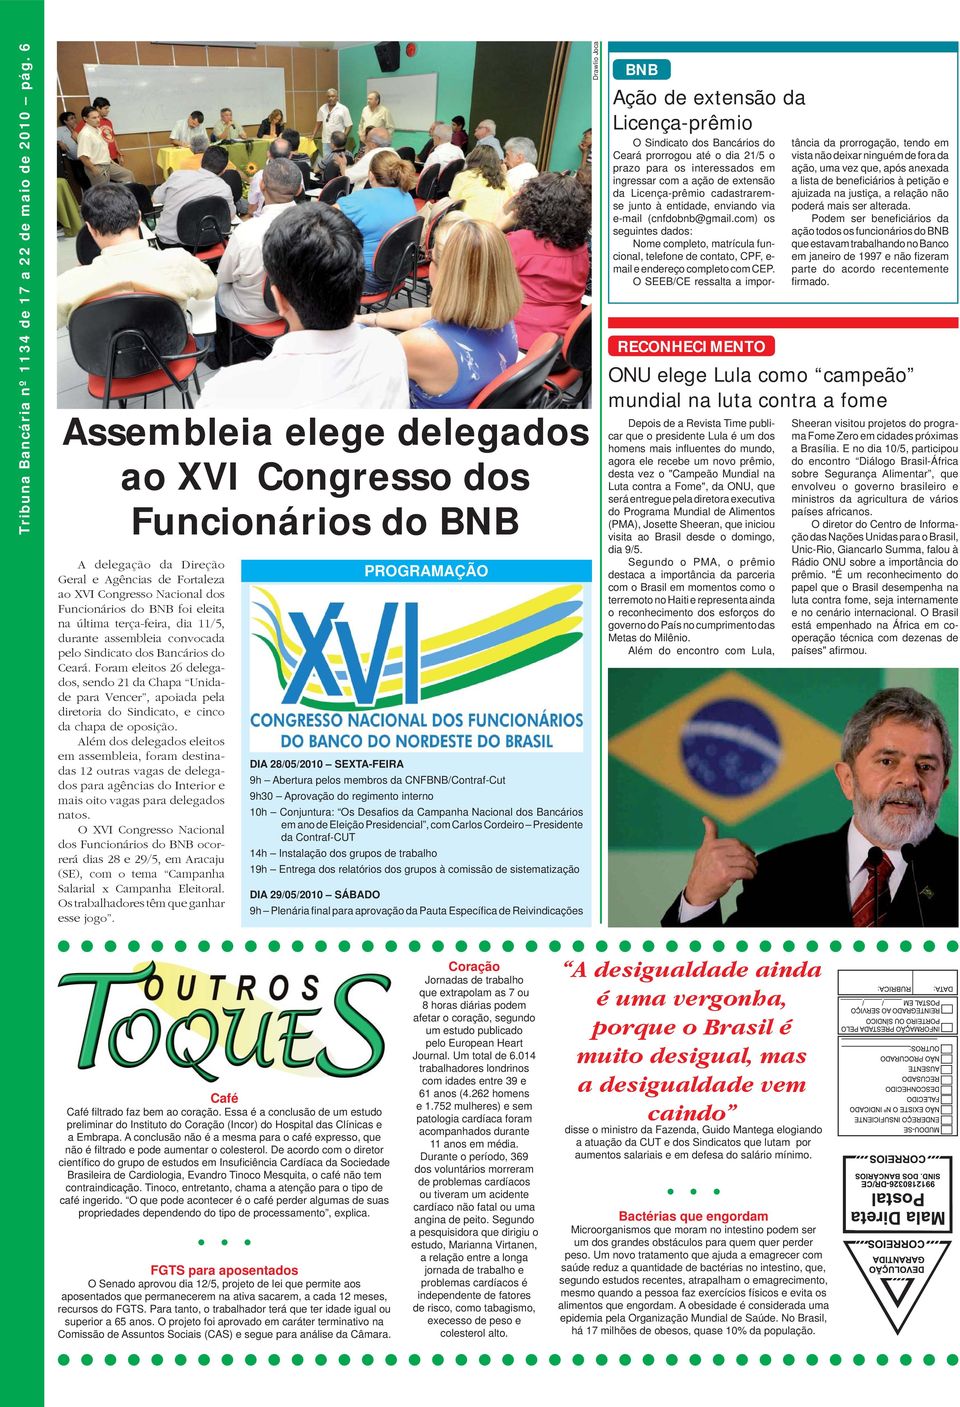 terça-feira, dia 11/5, durante assembleia convocada pelo Sindicato dos Bancários do Ceará.